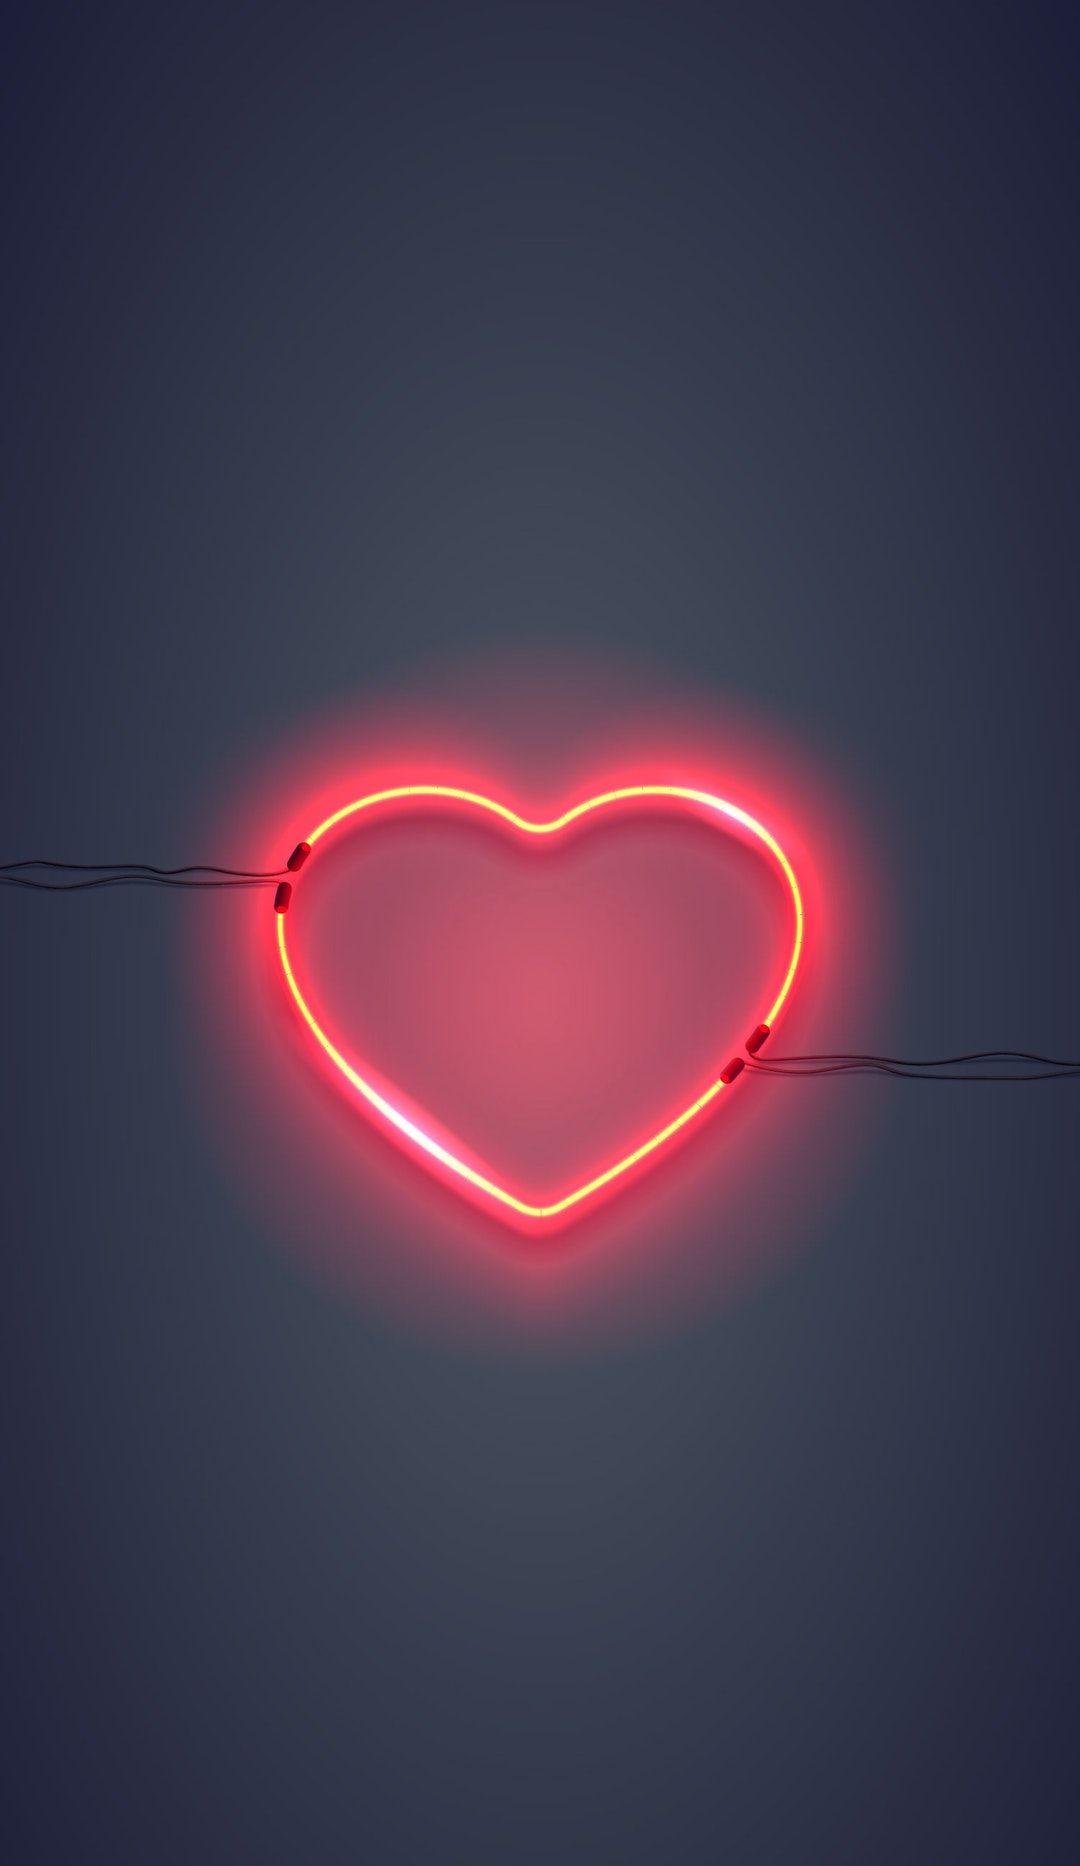 Love Broken - neon heart Wallpaper Download | MobCup